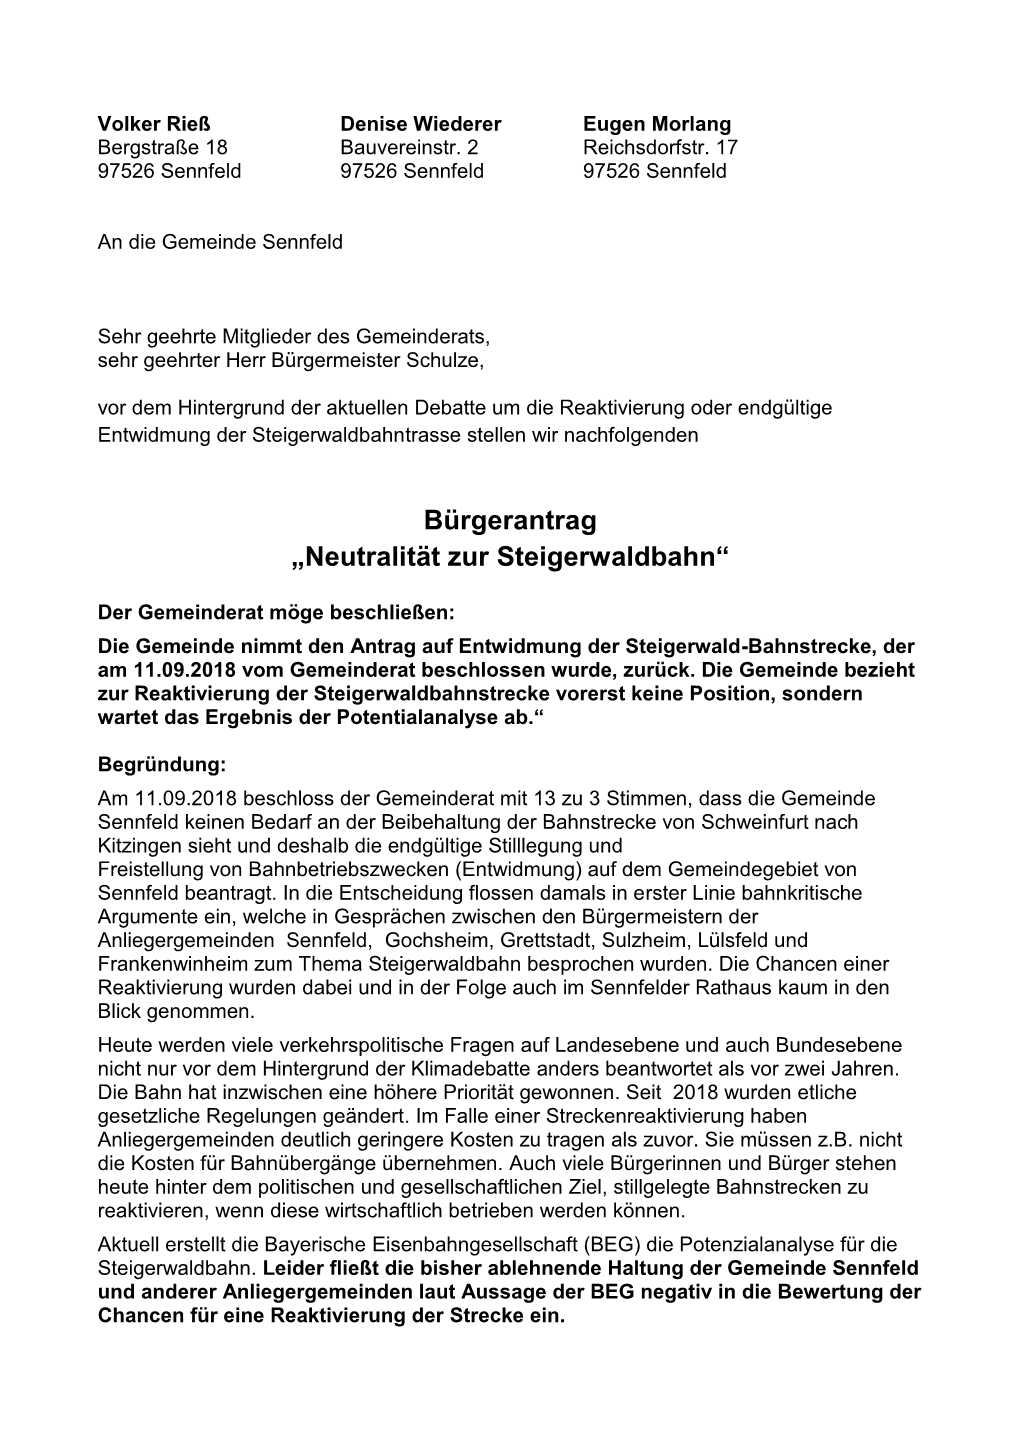 Bürgerantrag „Neutralität Zur Steigerwaldbahn“